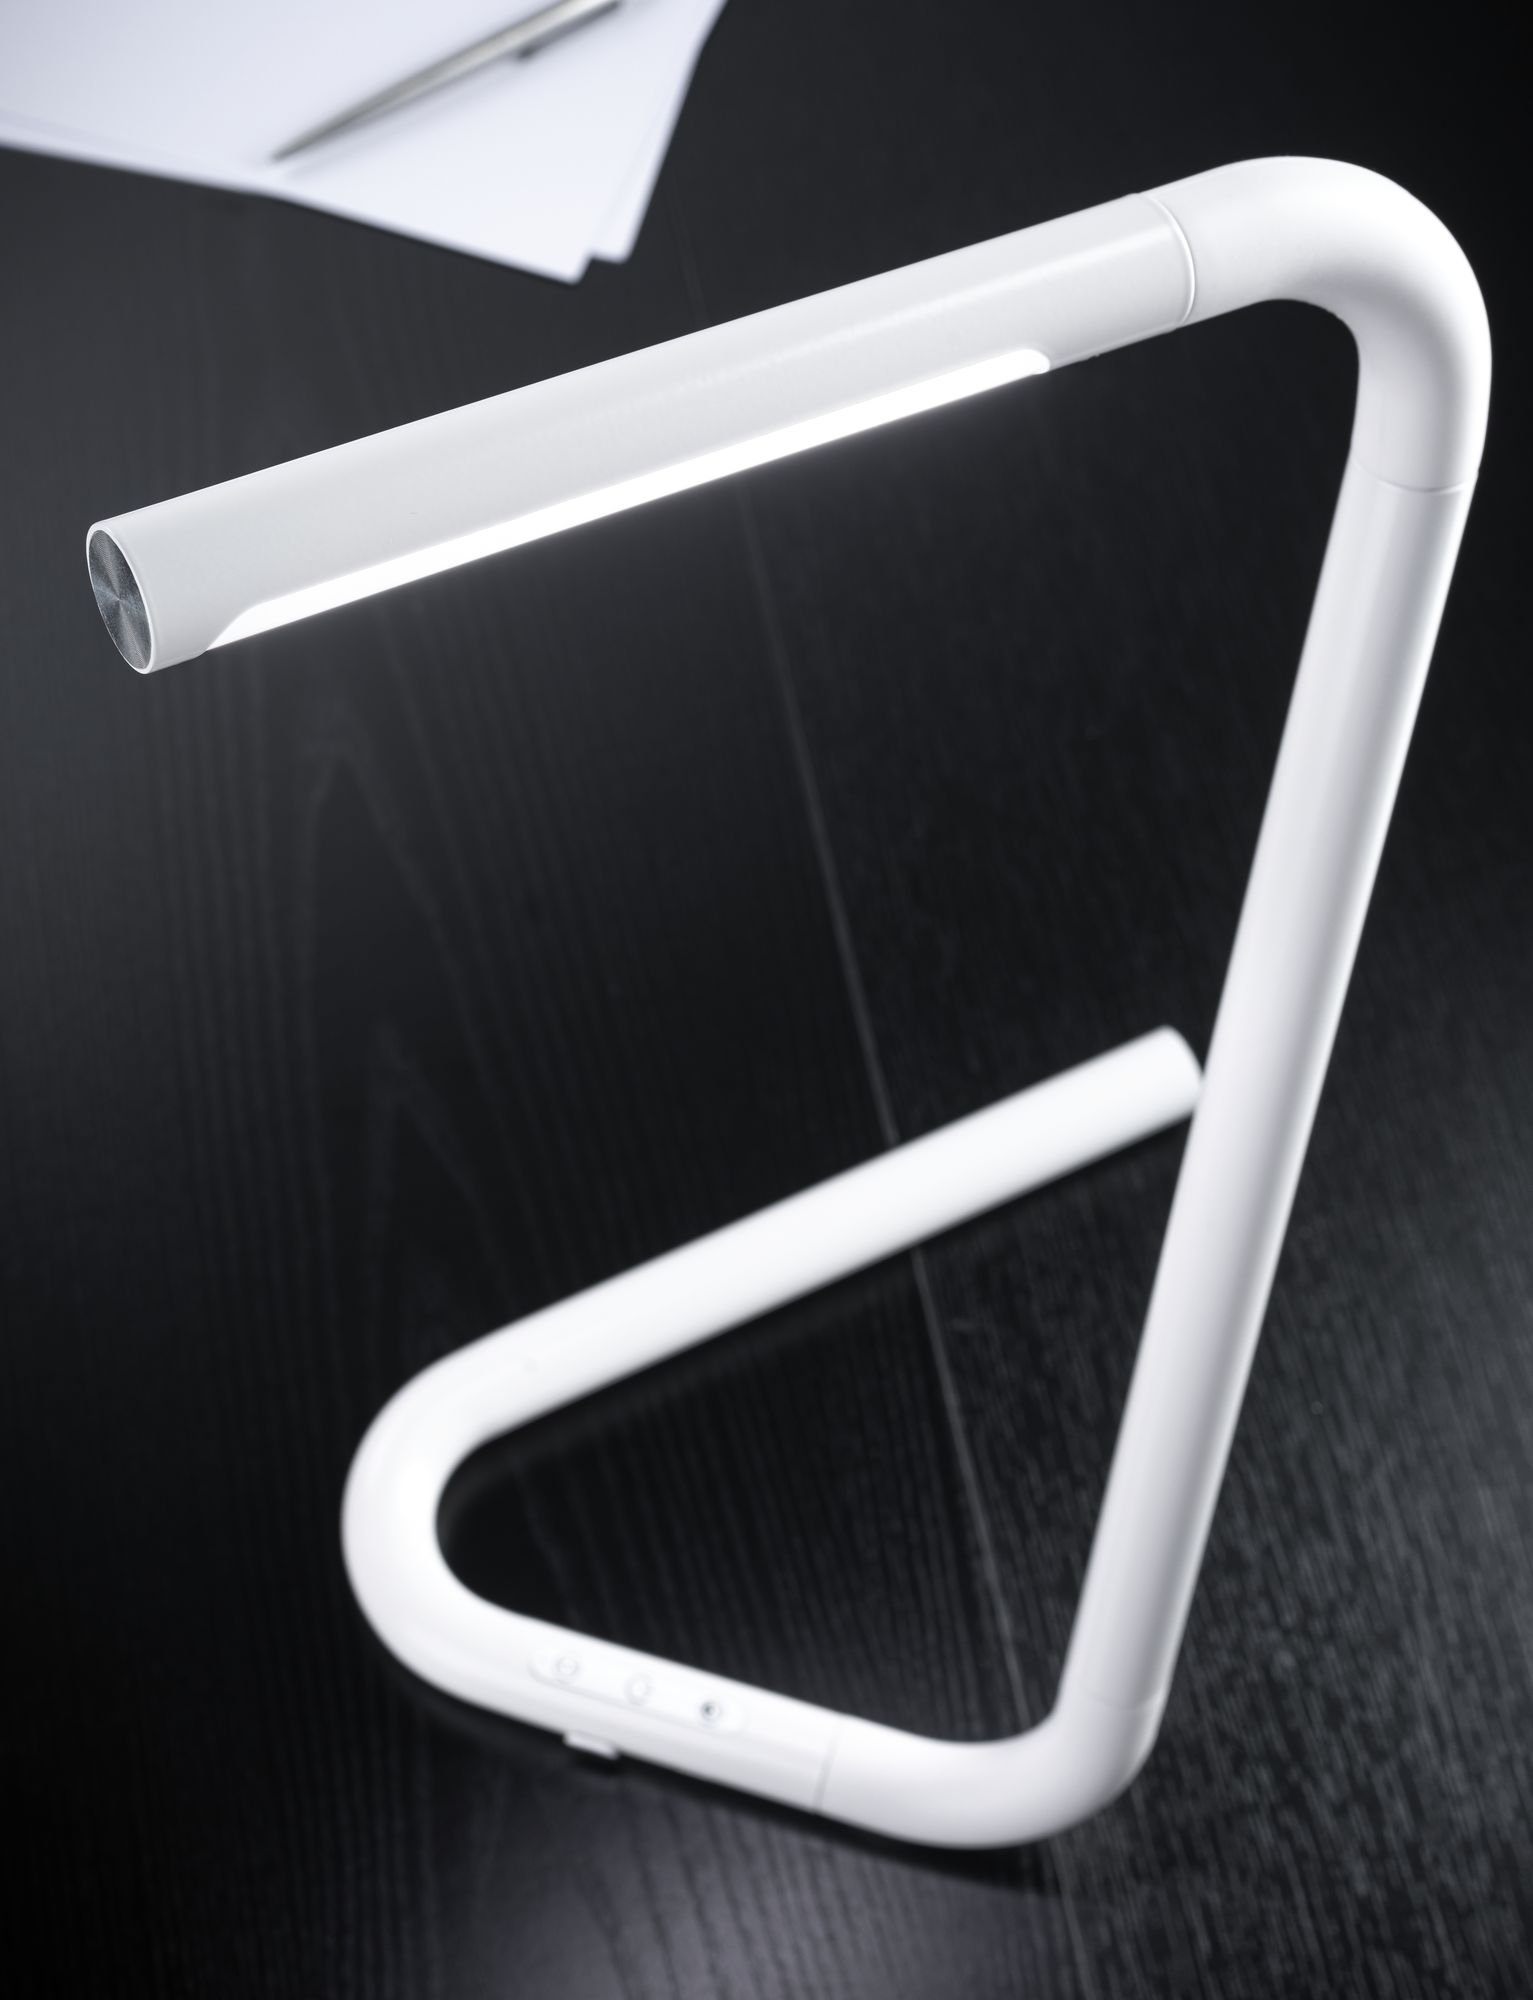 LED Schreibtischleuchte FlexLink Tunable White 370lm 4,5W Weiß